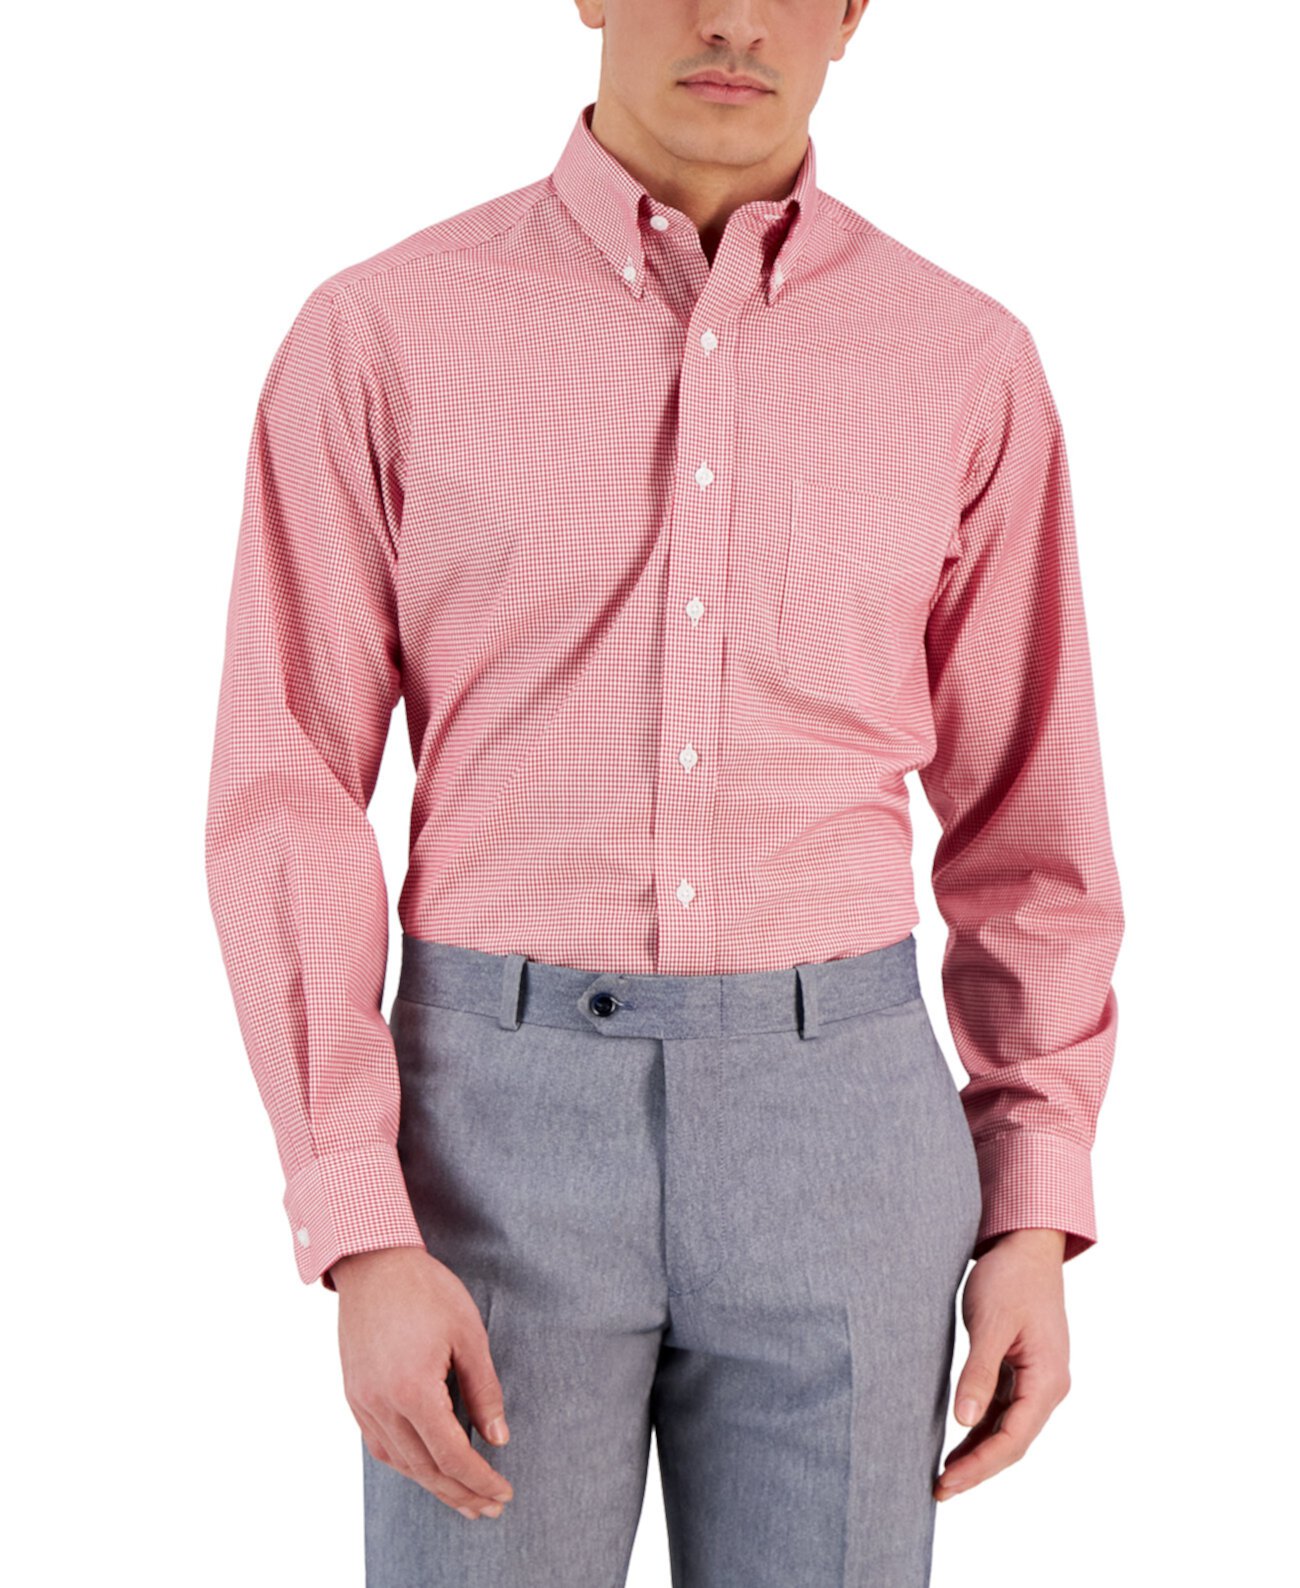 Мужская классическая рубашка стандартного кроя в мелкую клетку, созданная для Macy's Club Room